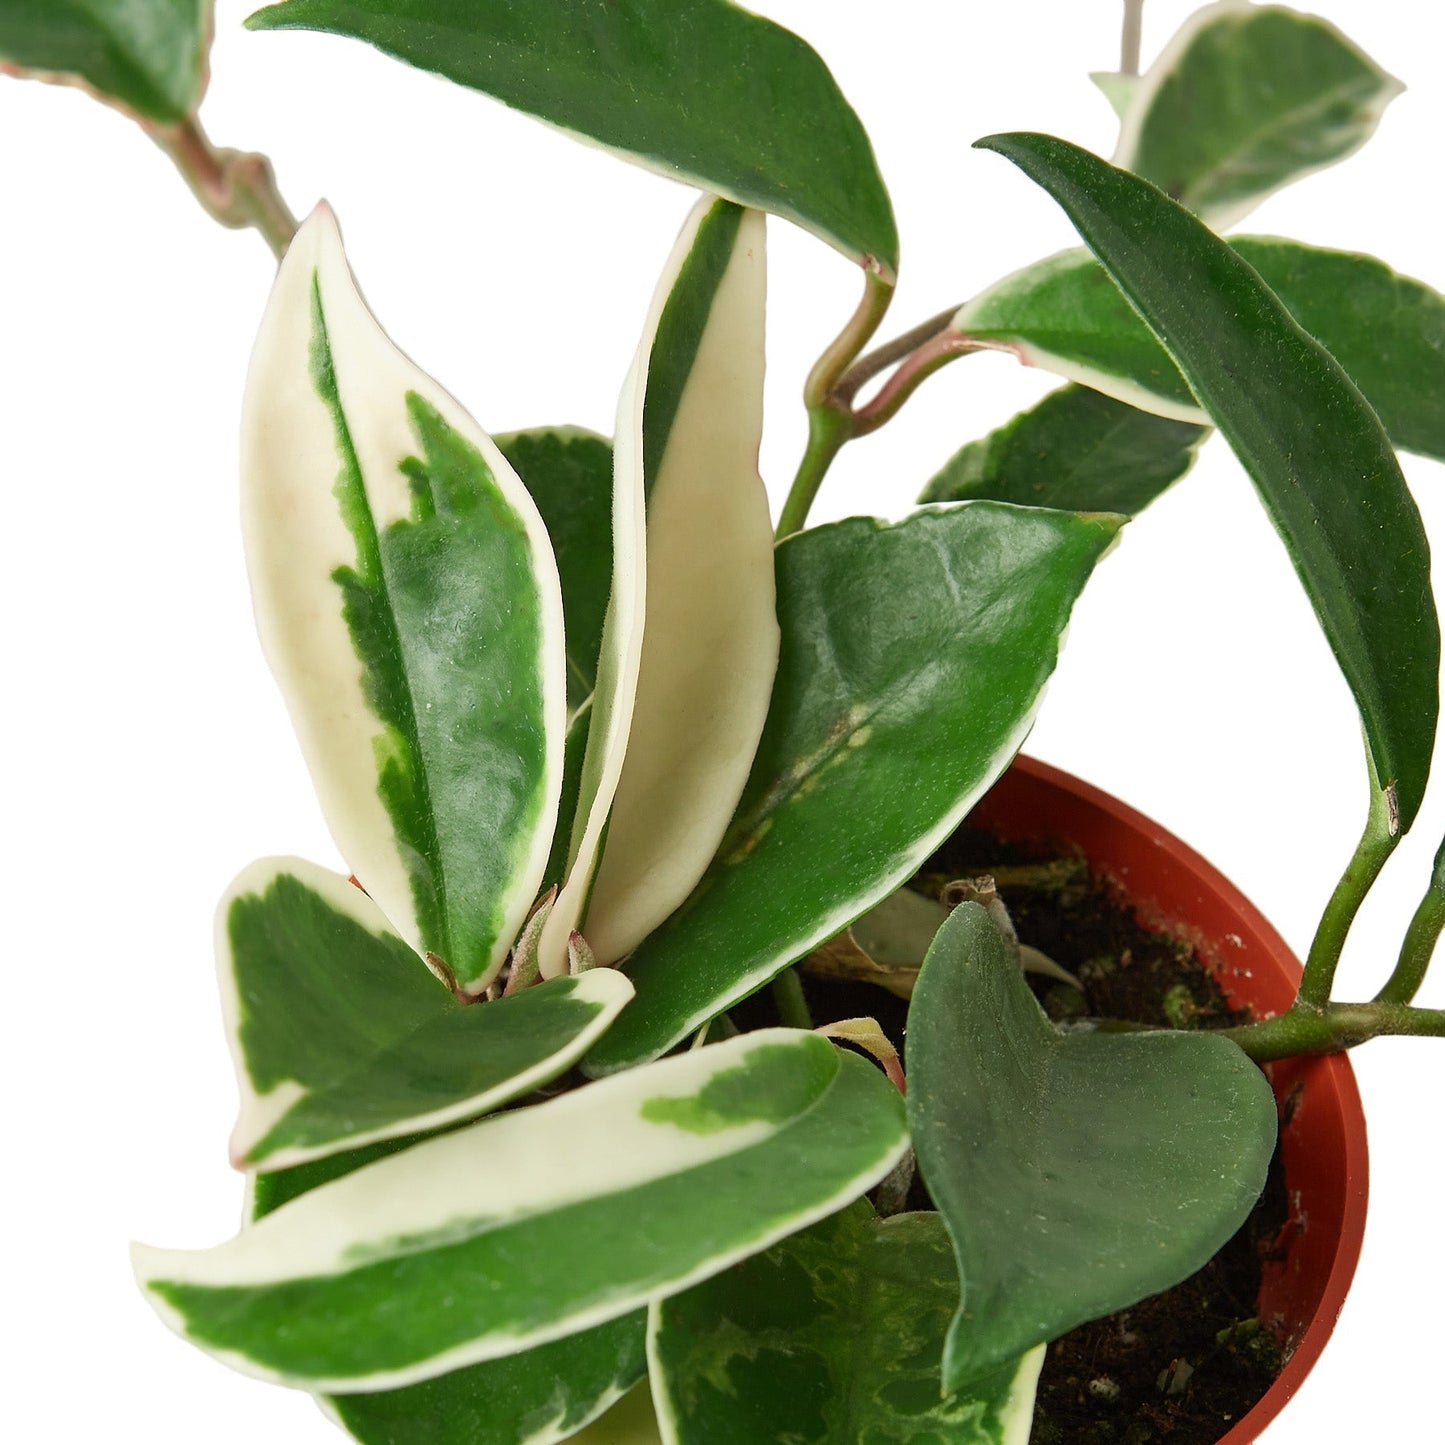 Hoya Carnosa 'Tricolor' - 6" Pot - NURSERY POT ONLY